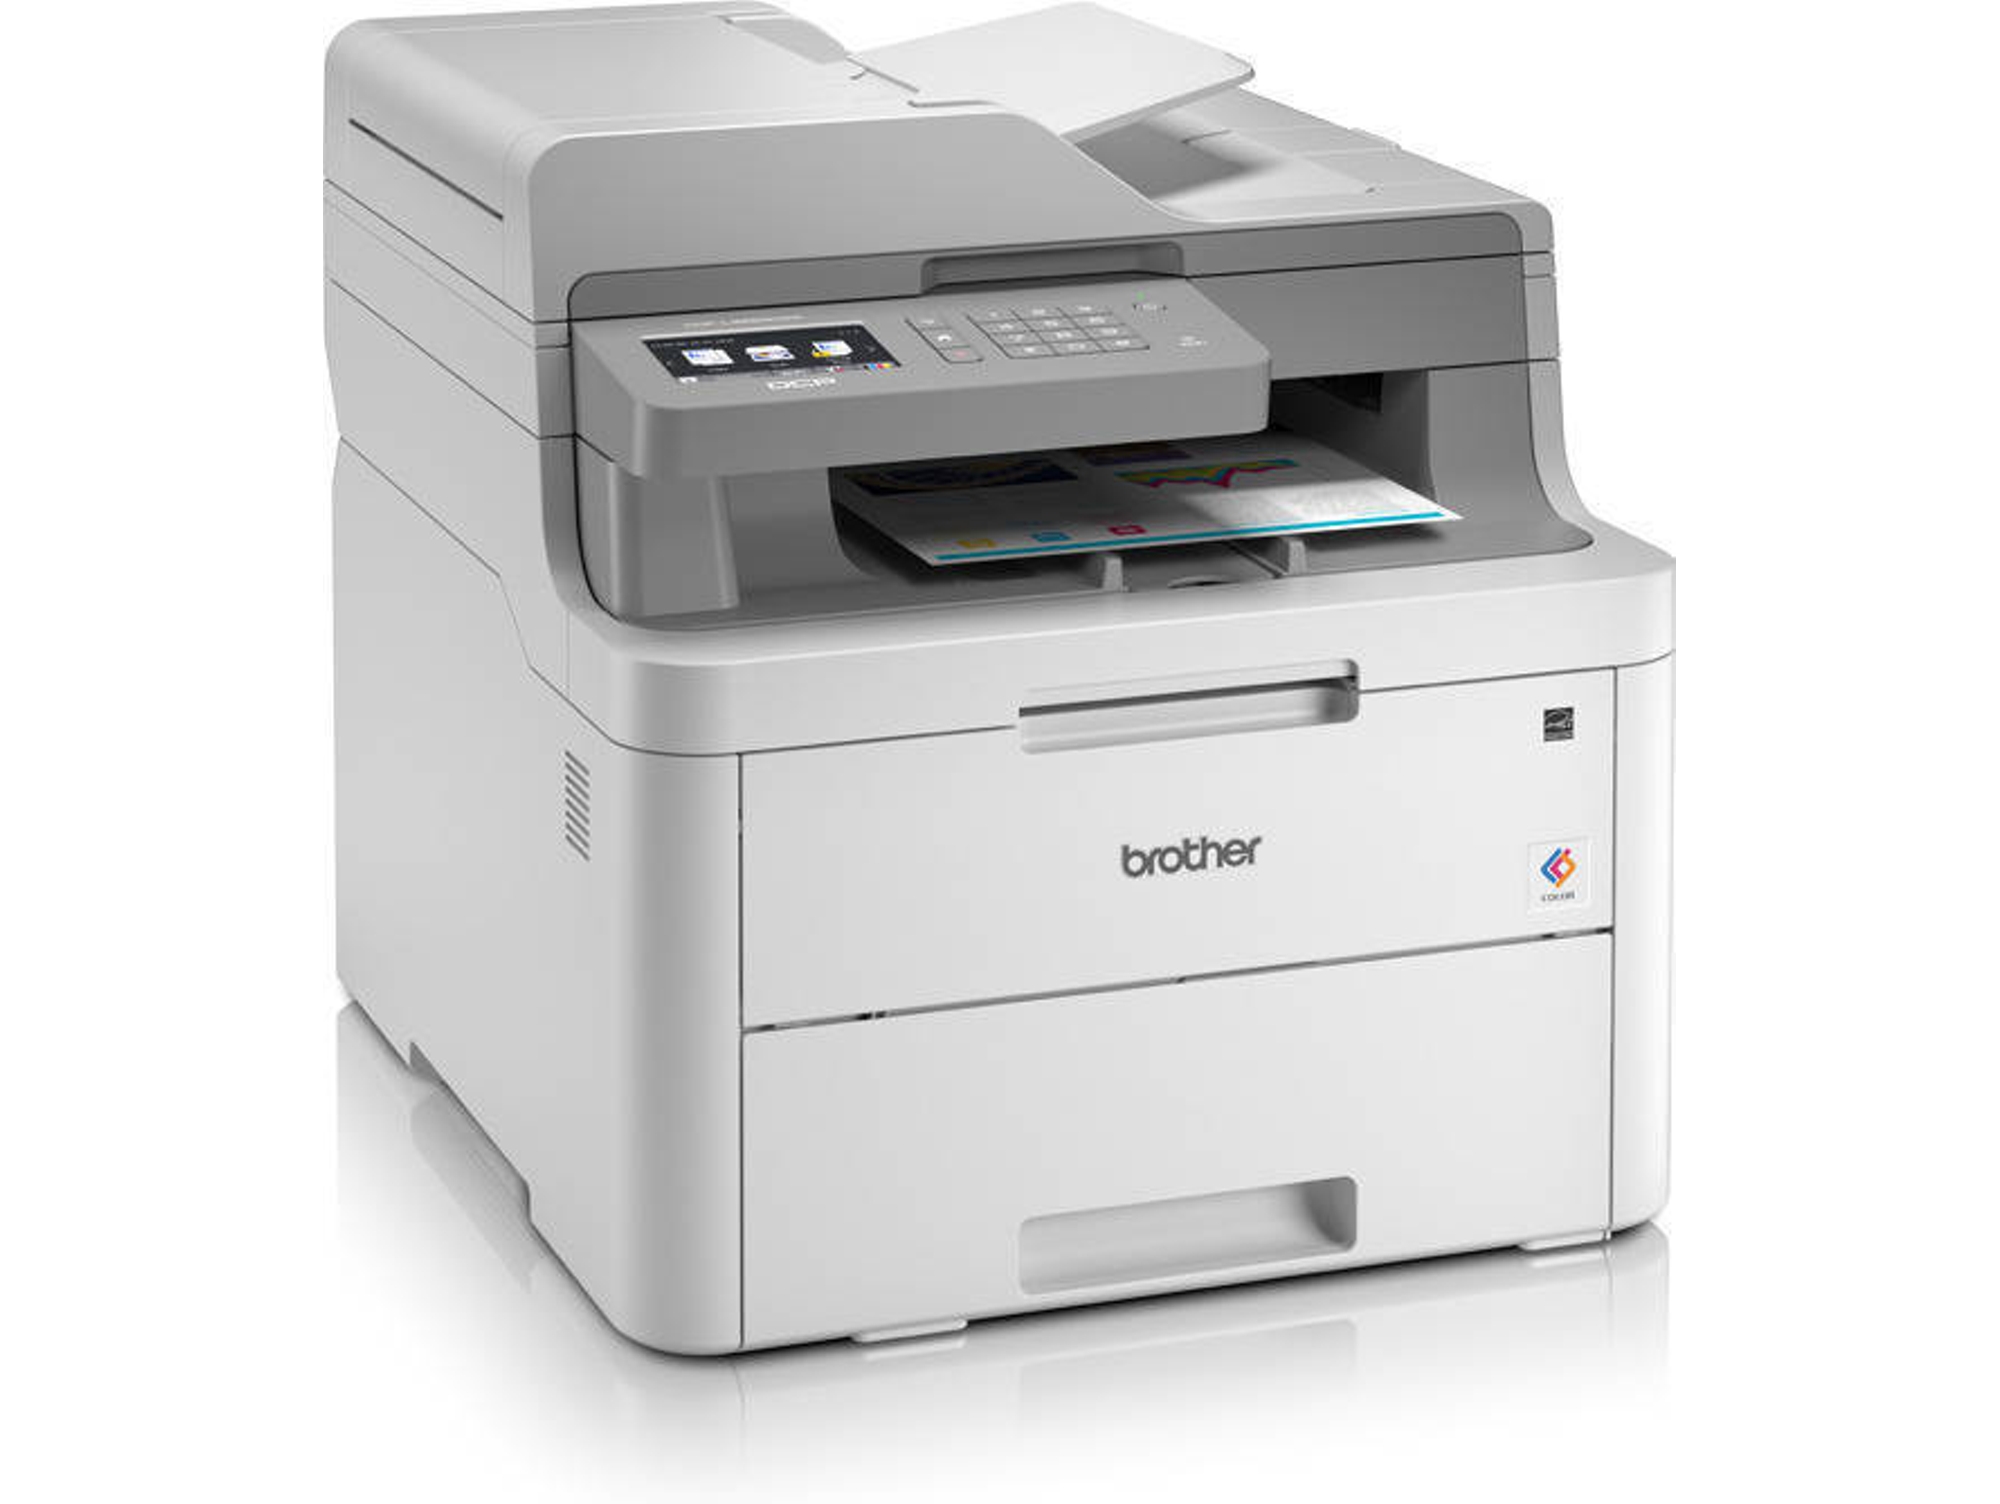 Impresora BROTHER DCP-L3550CDW (Multifunción - Láser Color - Wi-Fi)